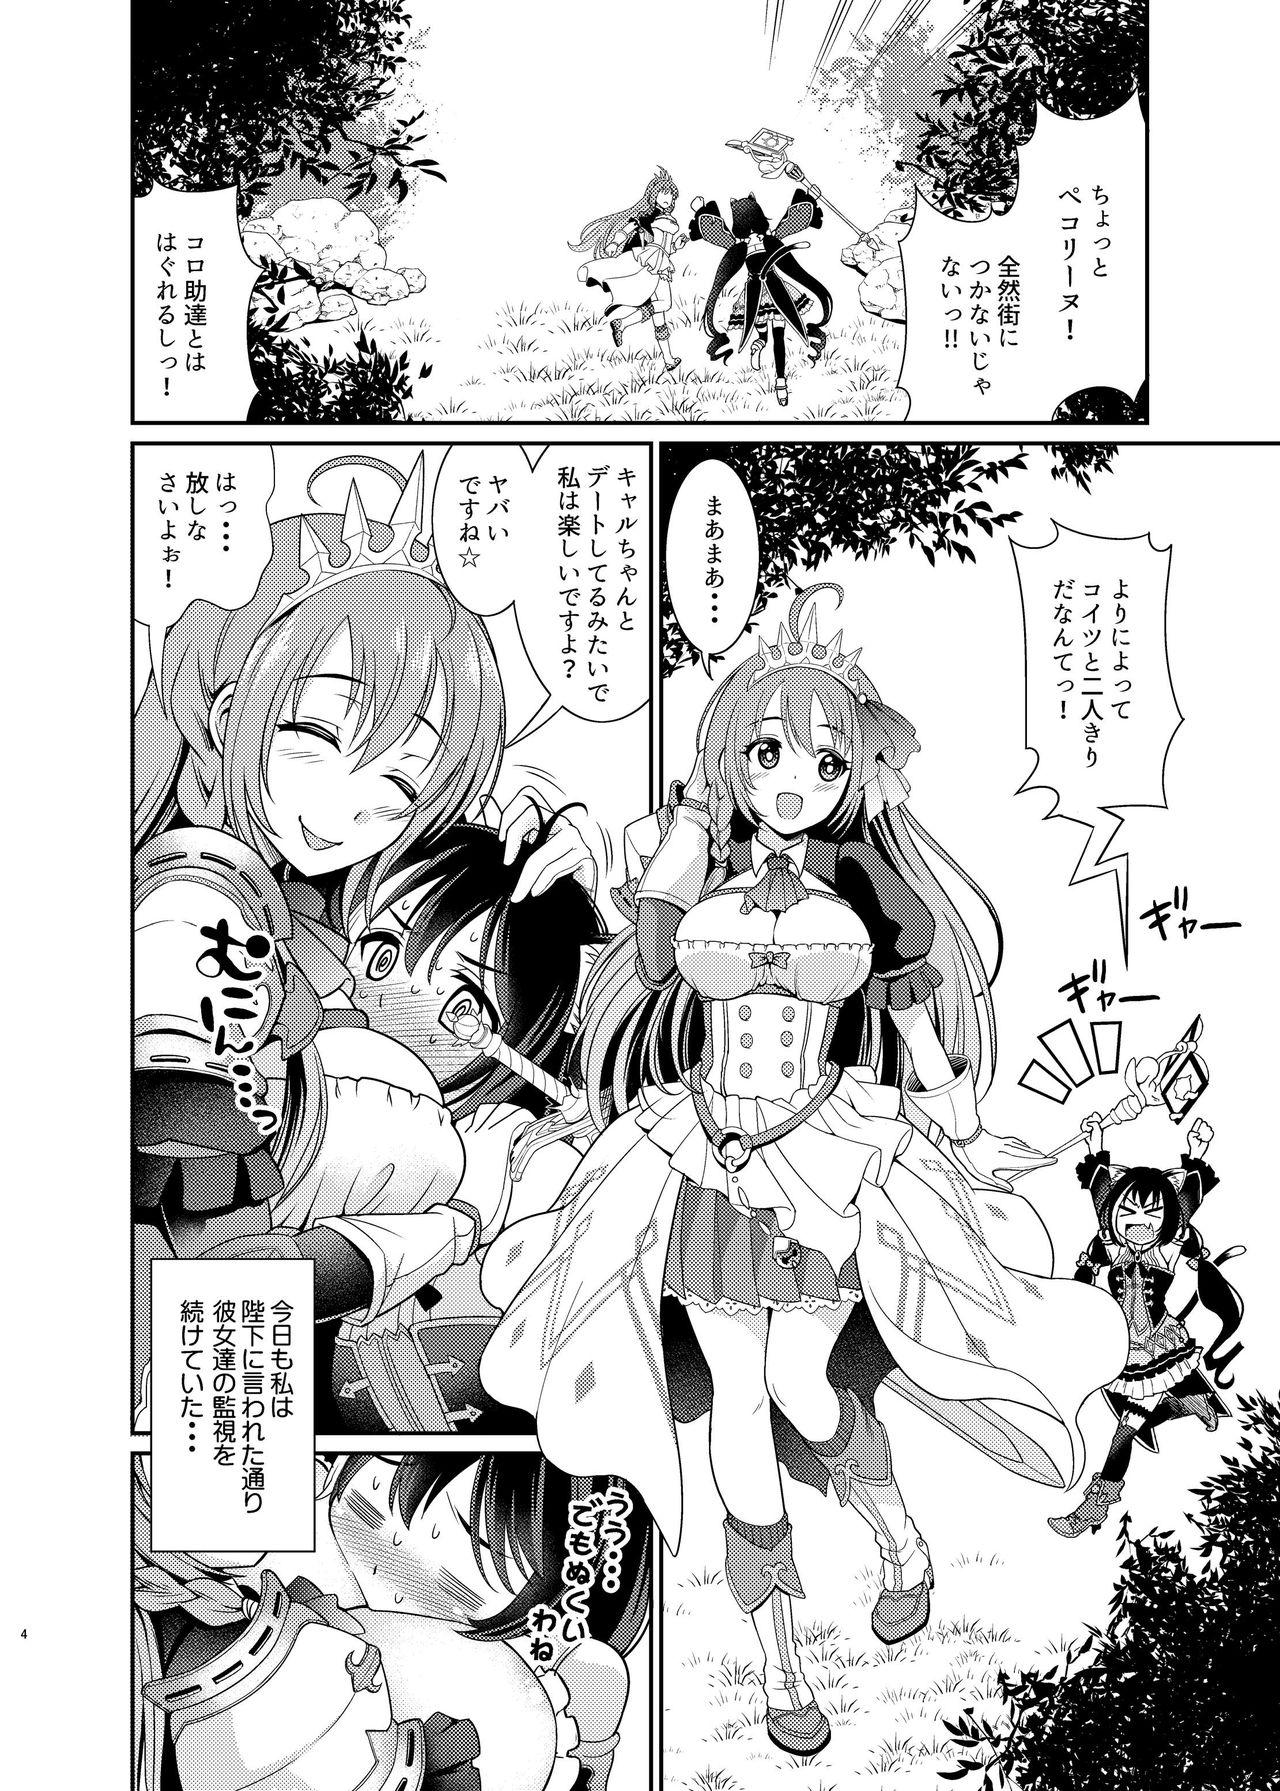 Prostituta Mamono Nante Tabaru Kara ... Ochinchin ga Hae chaunoyo!! - Princess connect Cornudo - Page 4